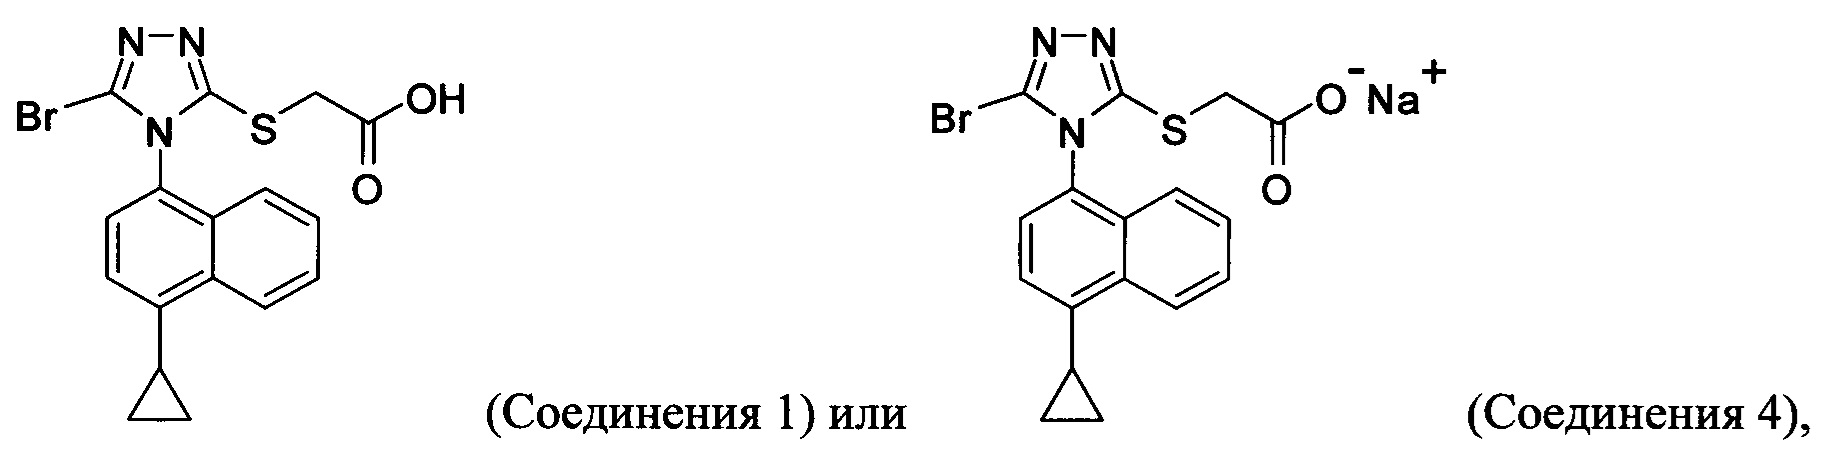 Бром и гидроксид натрия реакция. Пропиламин и уксусная кислота. Гидроксид брома формула. Реакция пропиламина с азотистой кислотой. Уксусная кислота + бром 2.